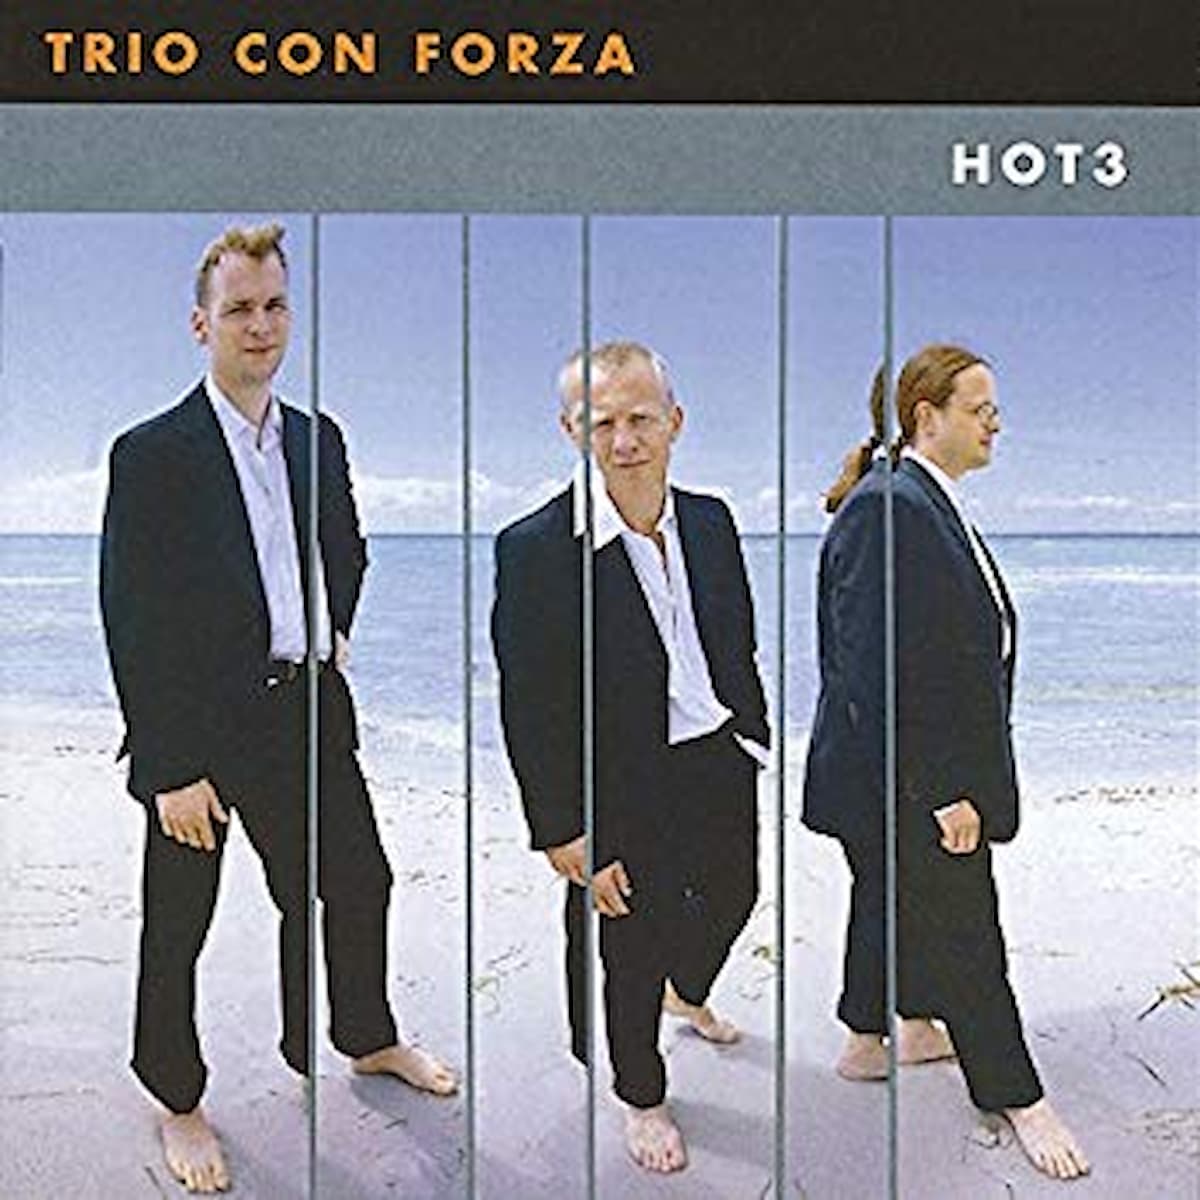 Record cover artwork for TRIO CON FORZA